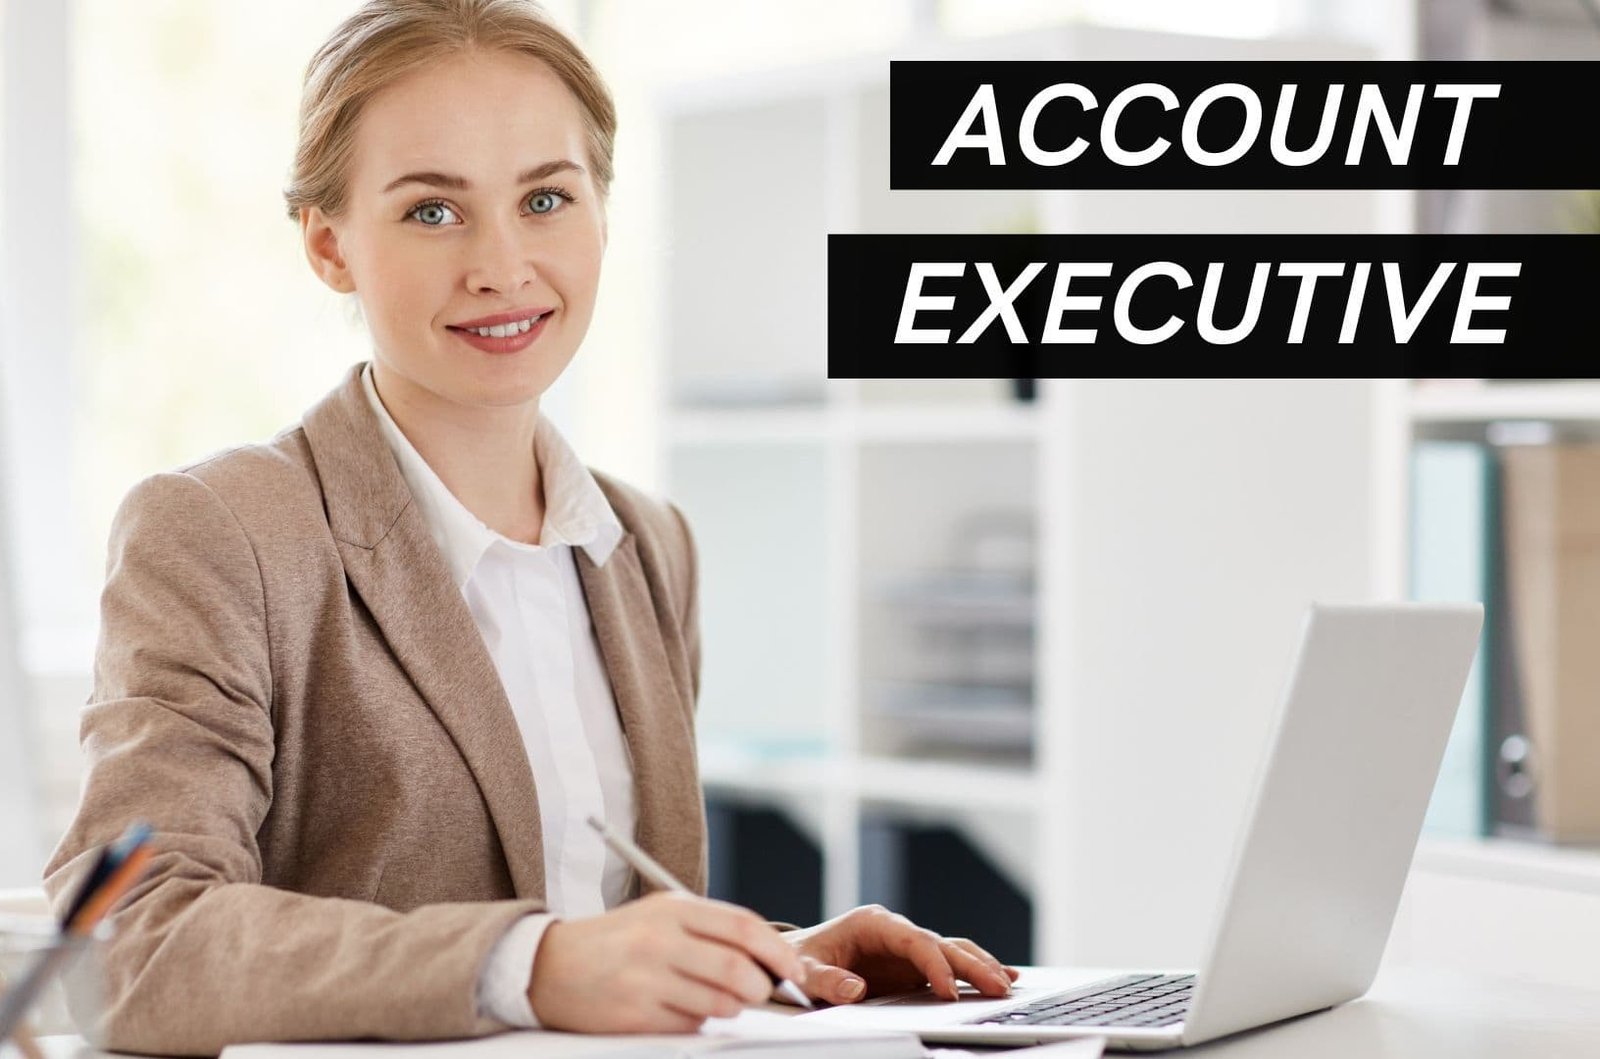 Account Executive (1 year diploma course)